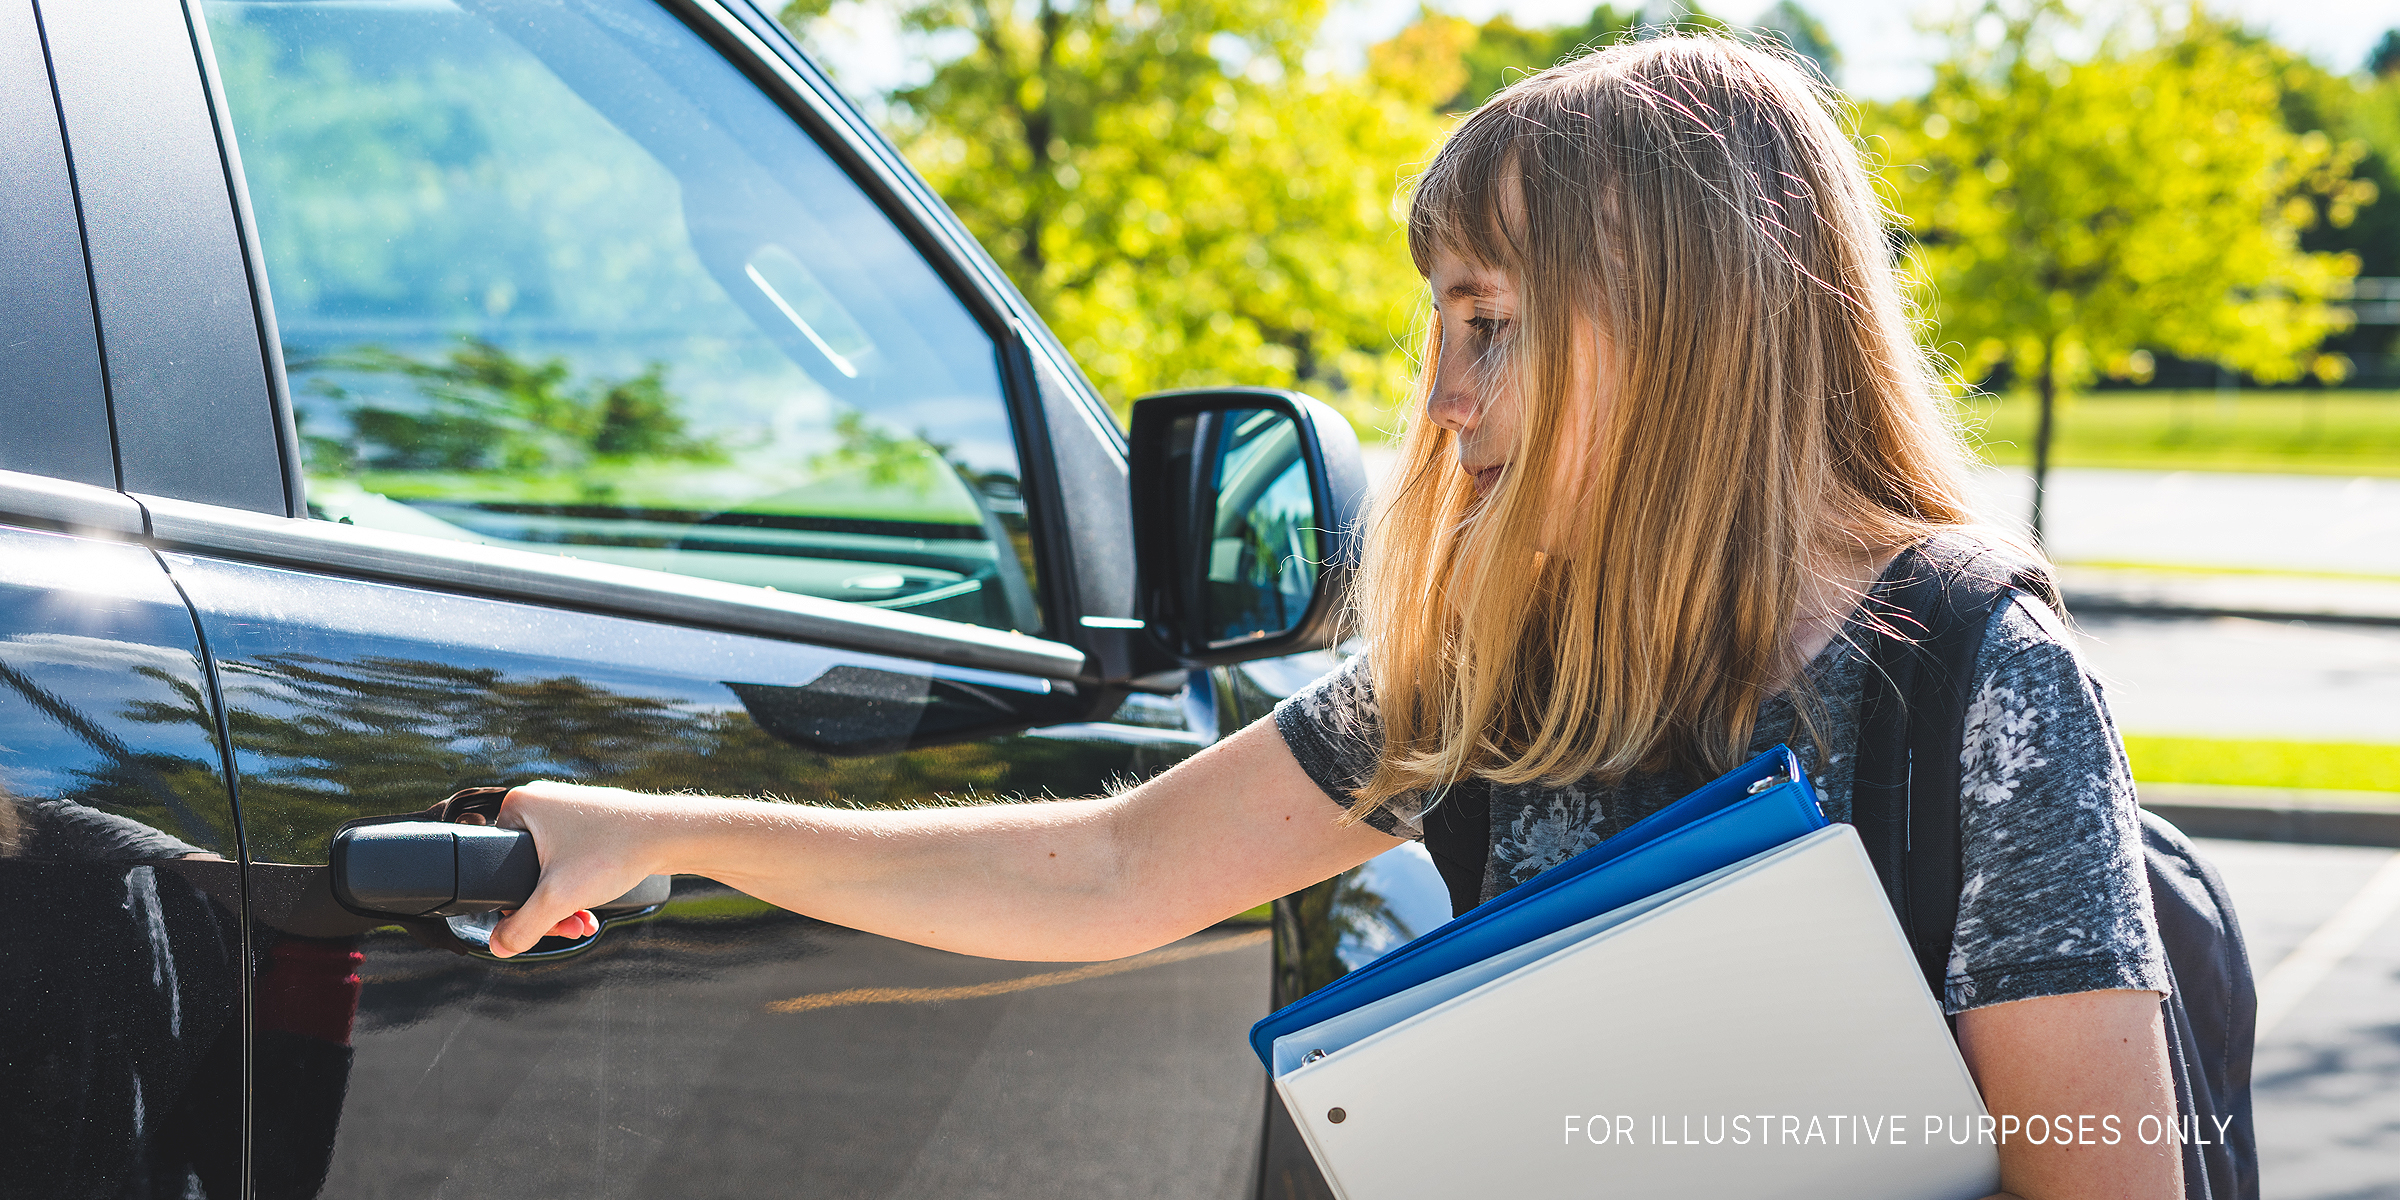 A teenage girl standing beside a car | Source: Shutterstock